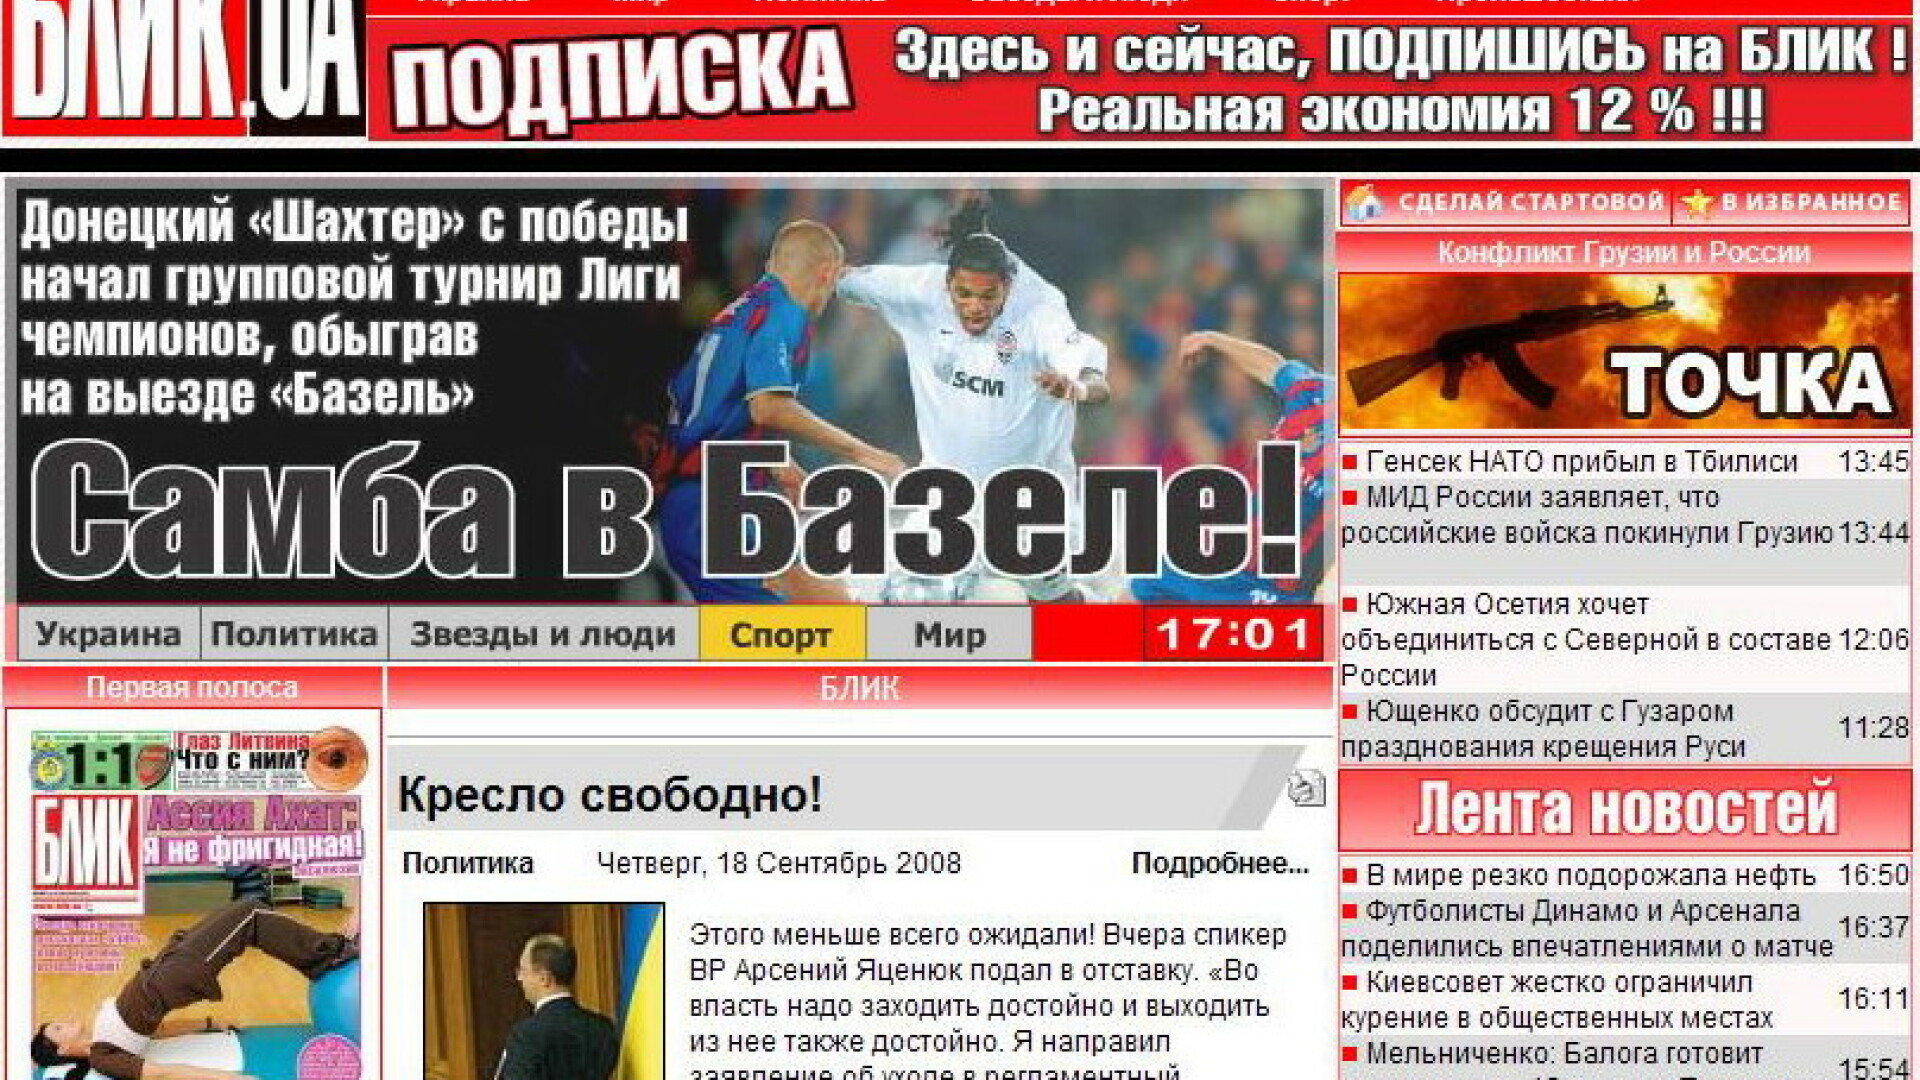 Adevarul lui Particiu iese la cumparaturi de ziare in Ucraina: Blik